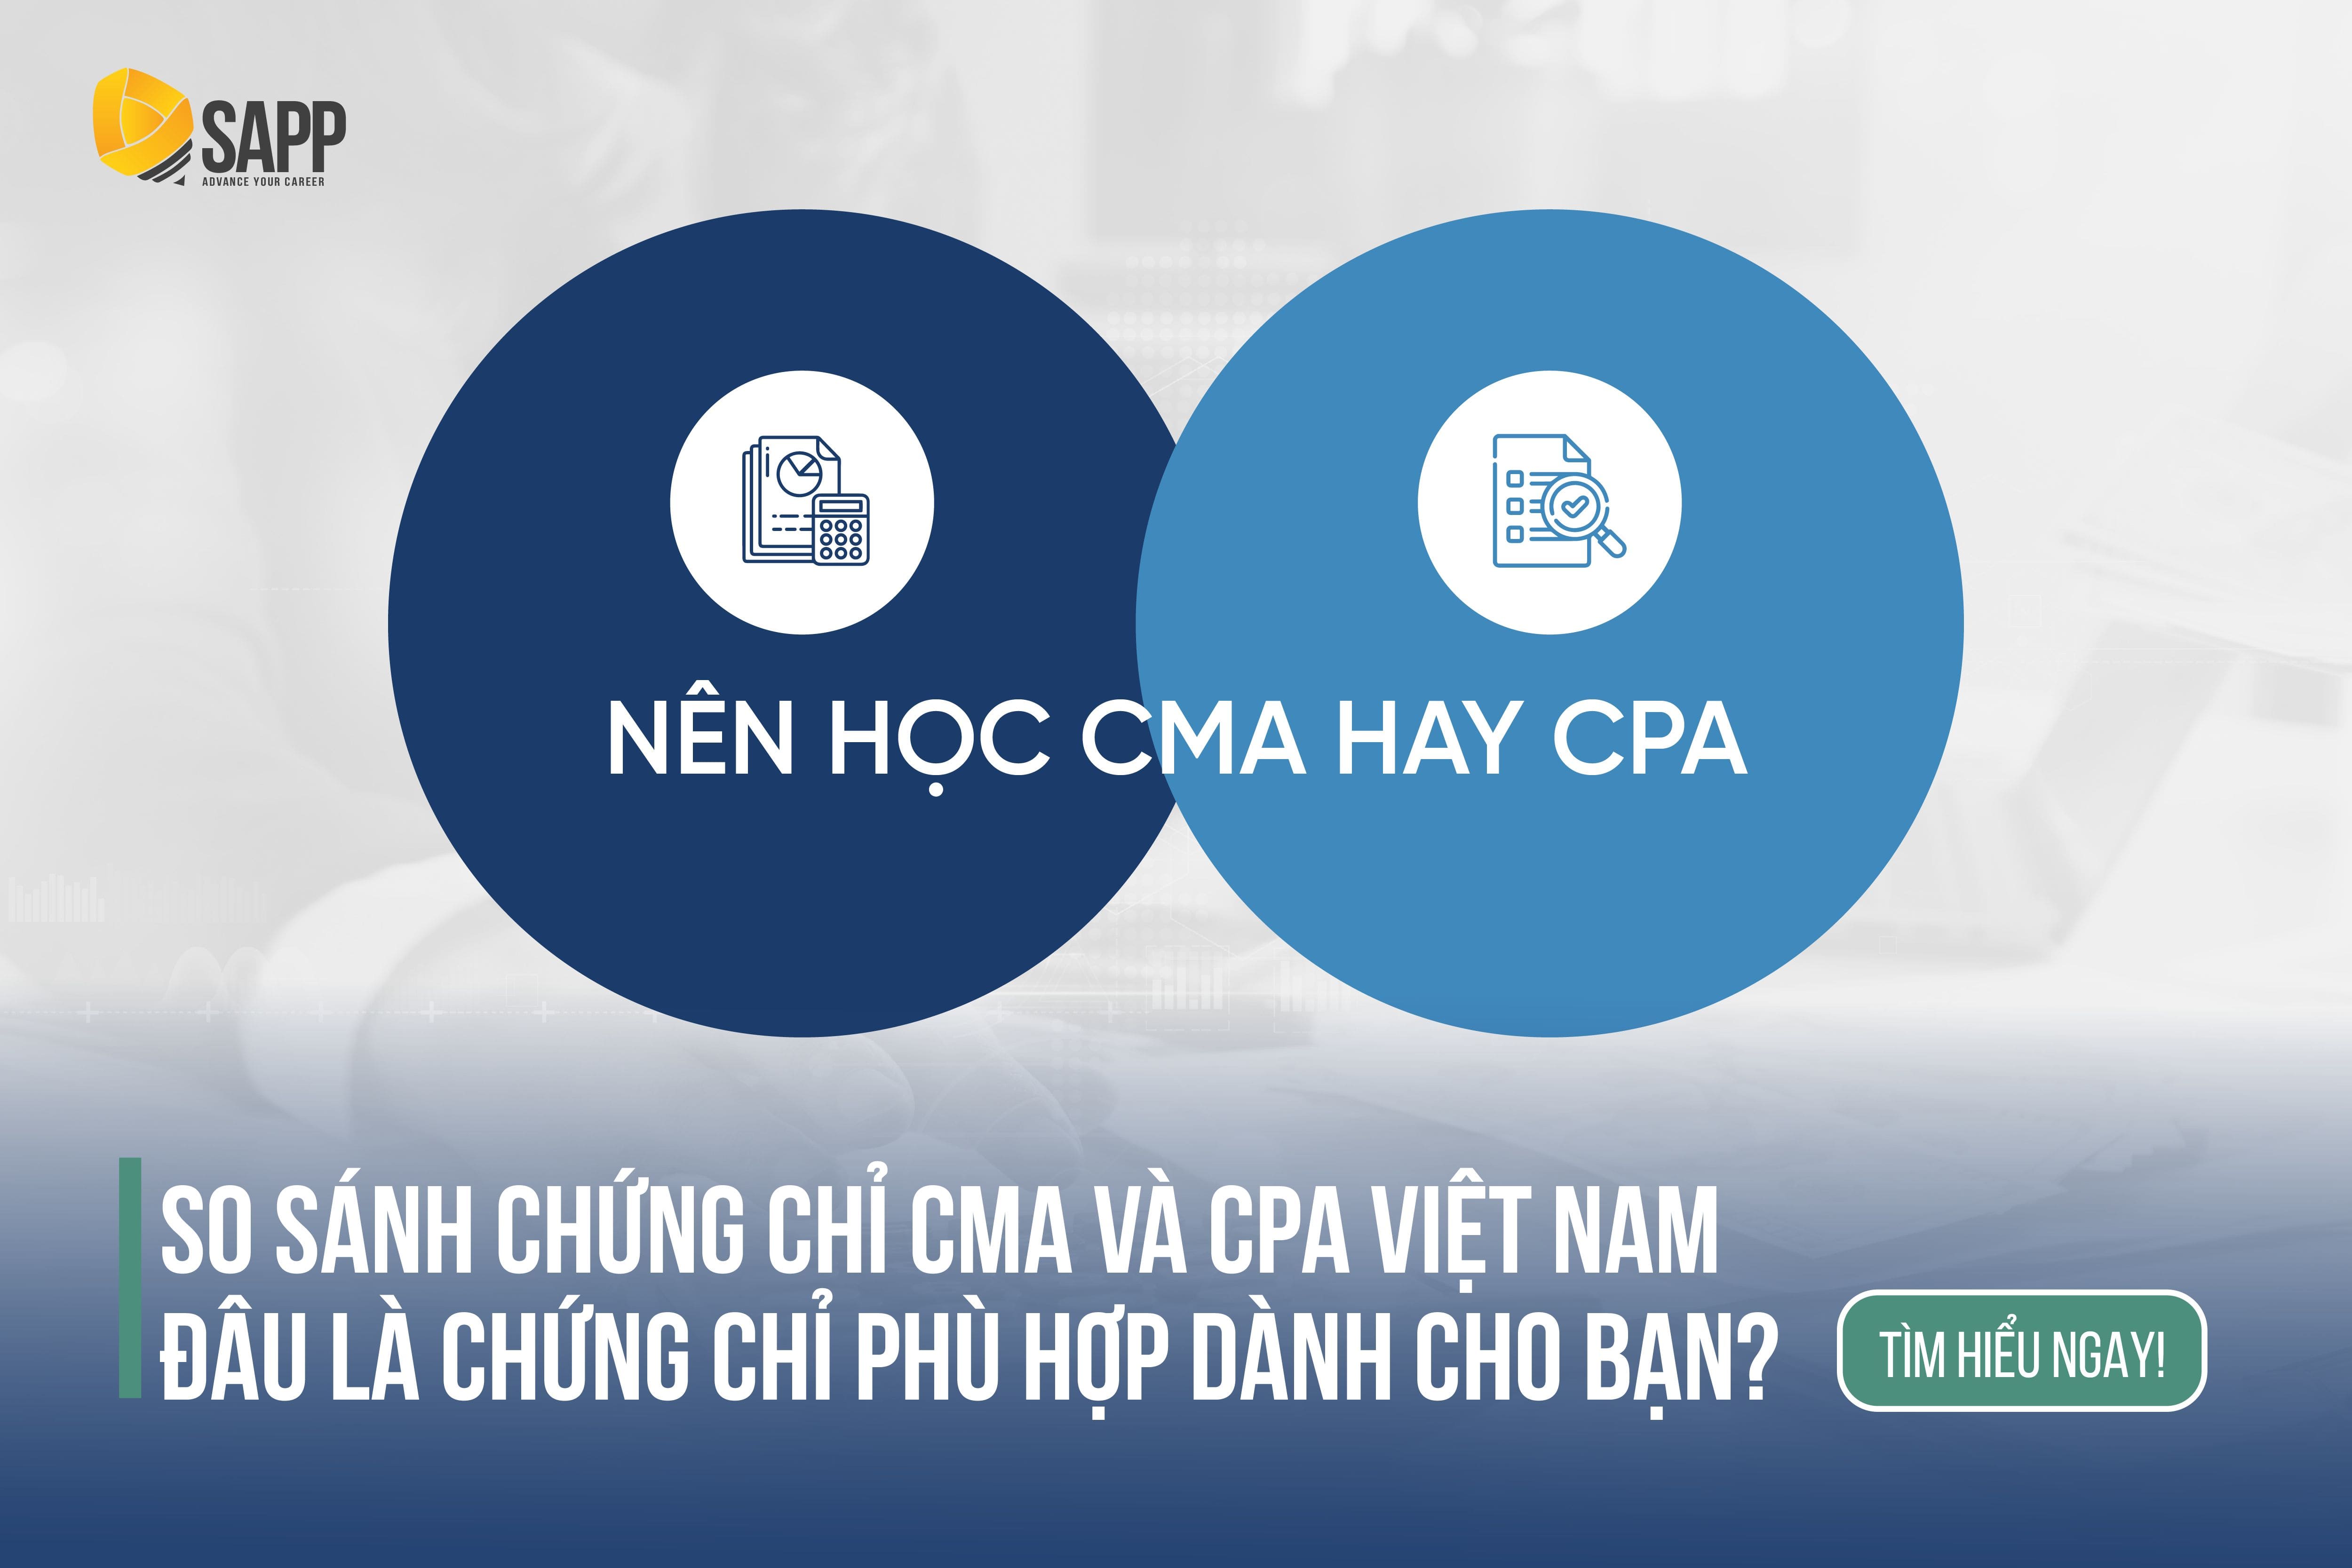 CPA Việt Nam và CMA - Bạn cần chứng chỉ nào để thăng tiến?